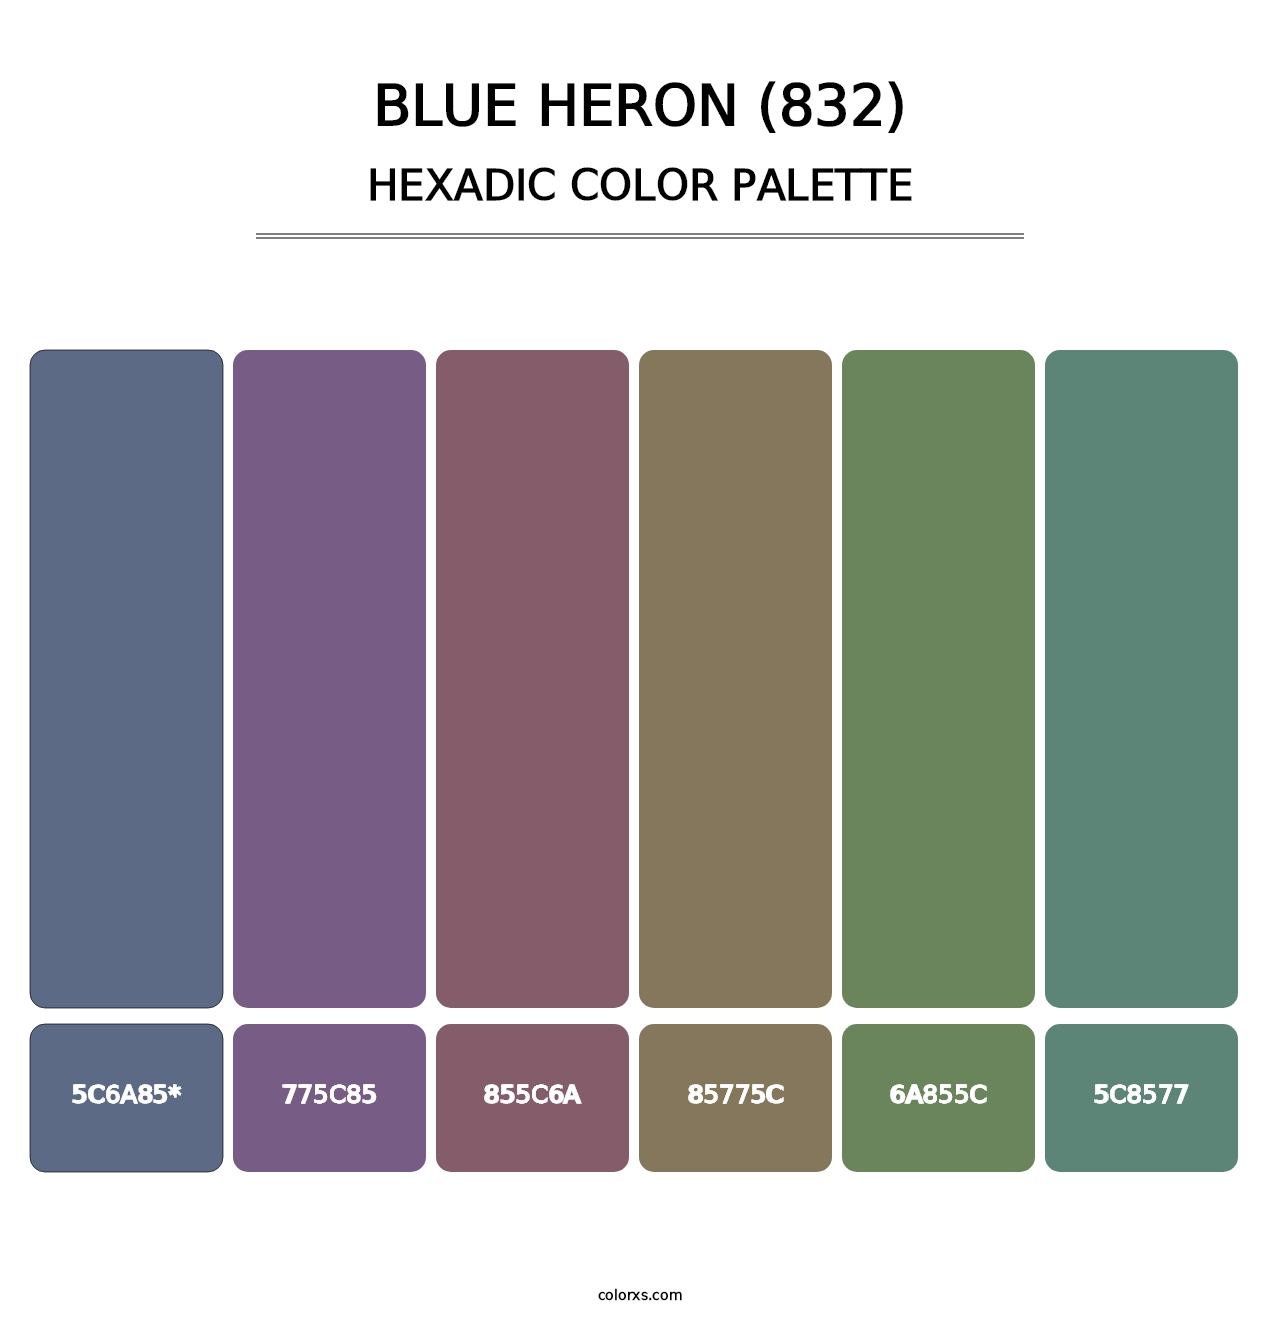 Blue Heron (832) - Hexadic Color Palette